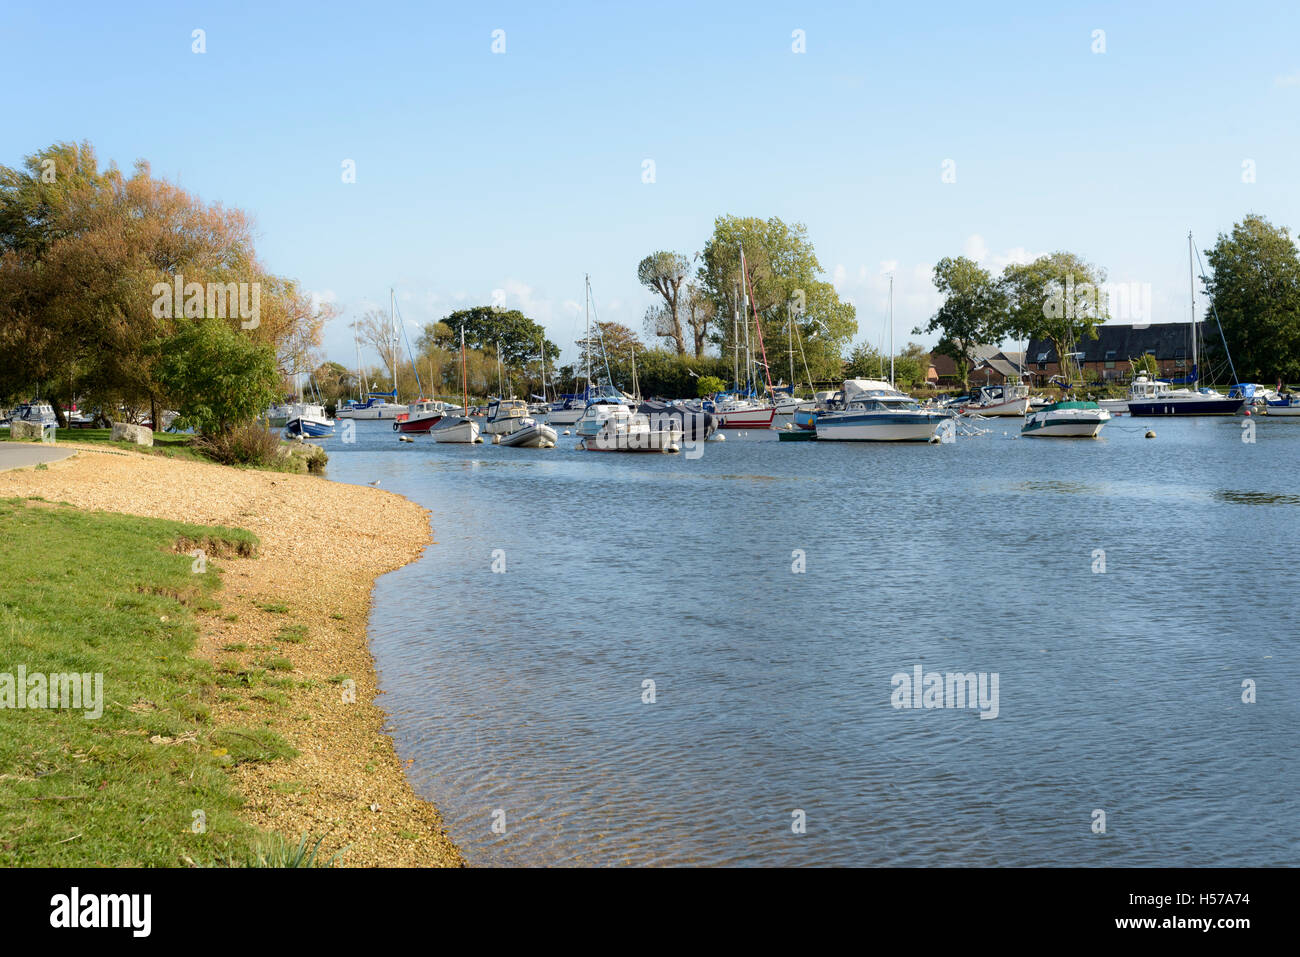 Bateaux amarrés sur la rivière Stour, maires Mead, Christchurch, Dorset, England, UK Banque D'Images